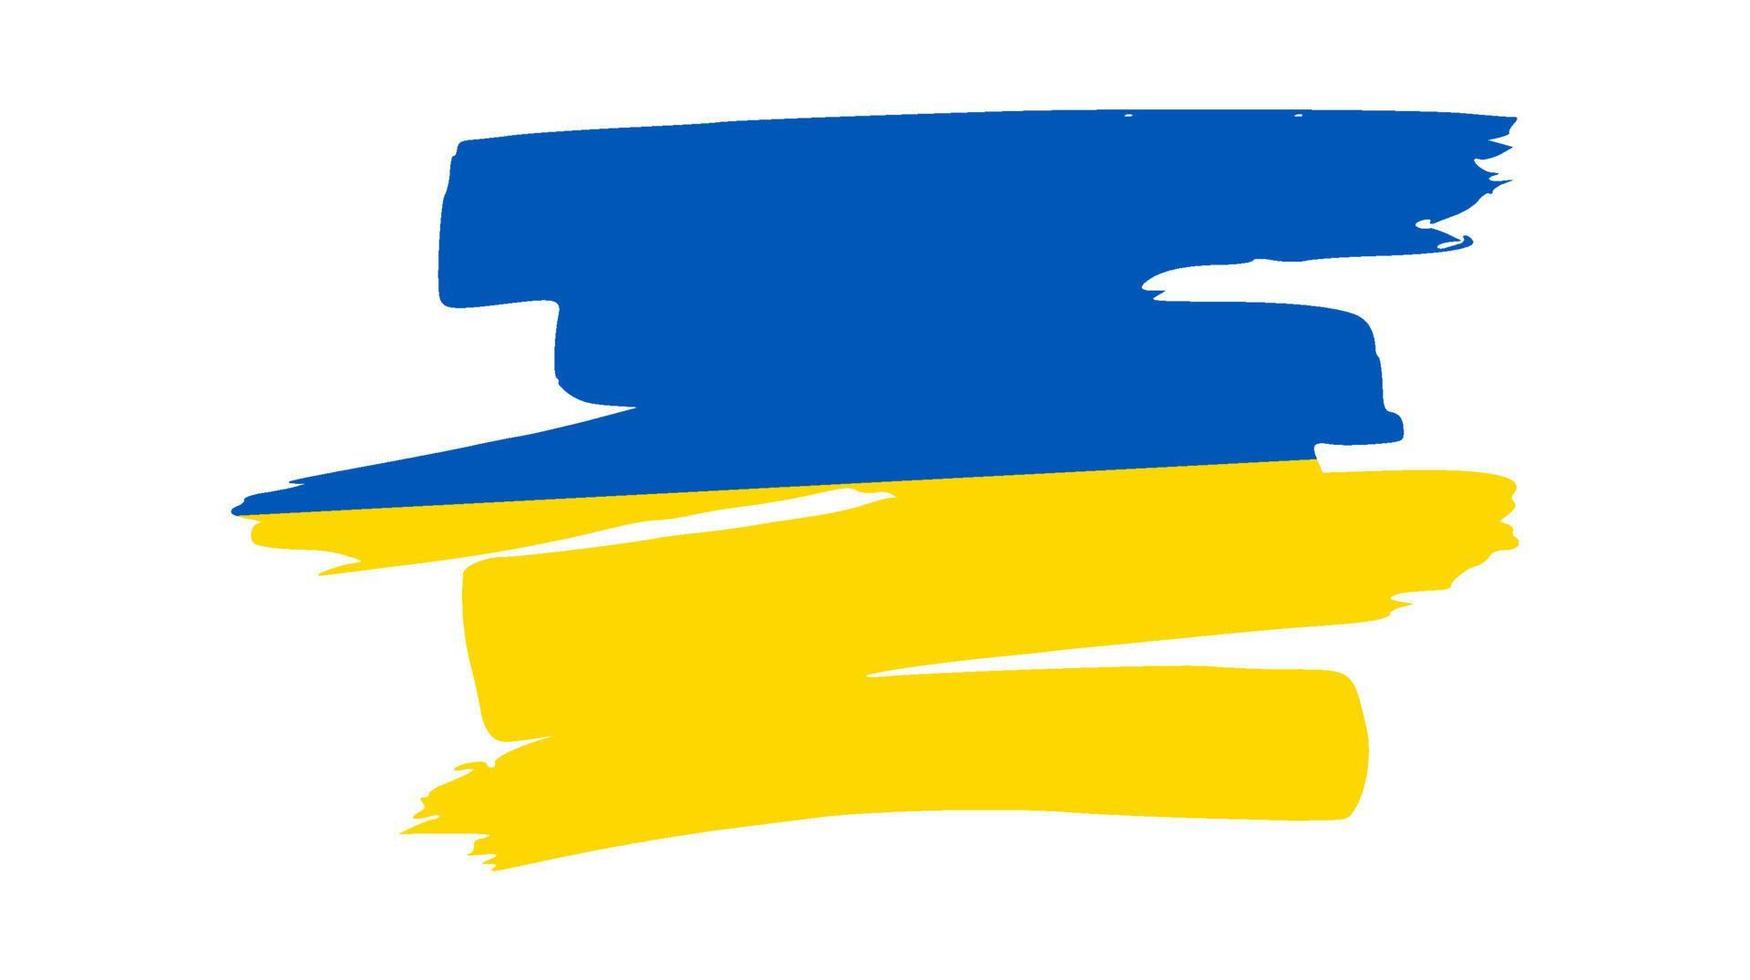 bandera nacional ucraniana en estilo grunge vector